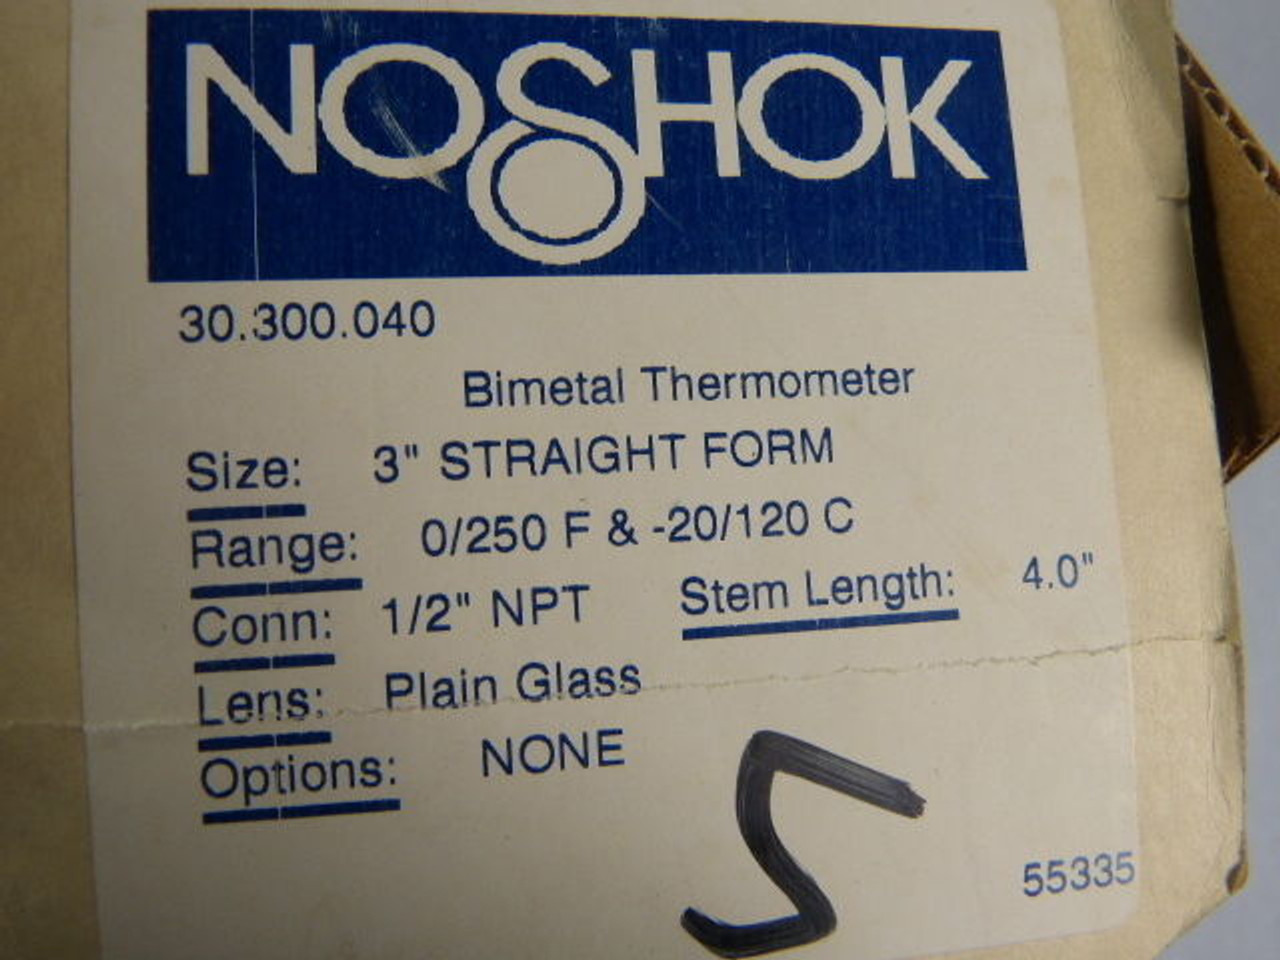 NoShok 30.300.040 Bimetal Thermometer 4" Stem 1/2" NPT 0/250 F -20/120 C ! NEW !